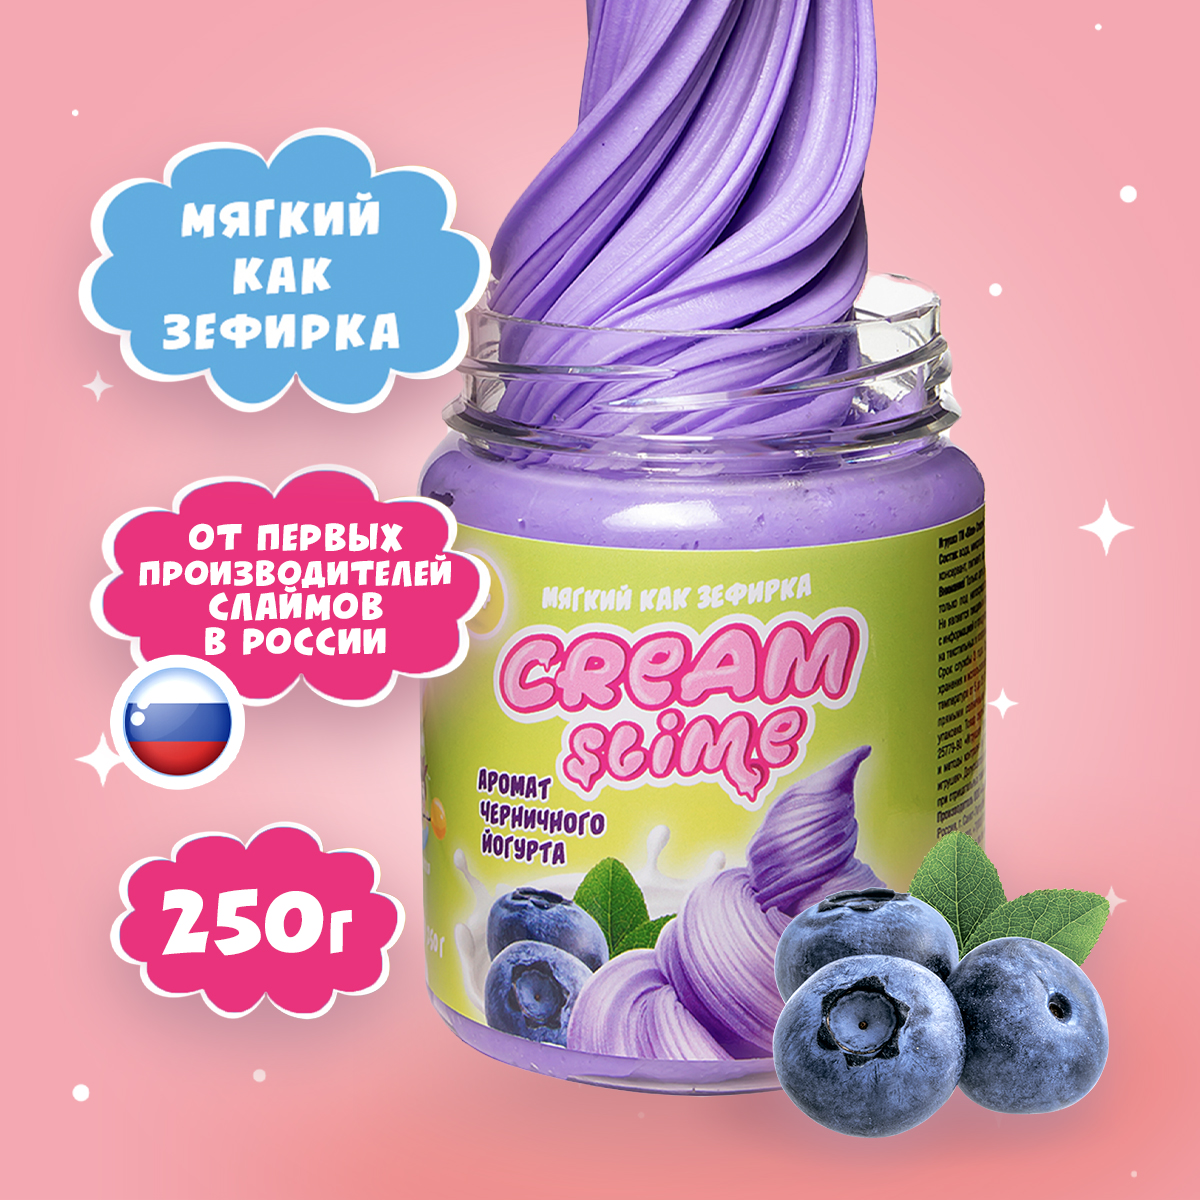 Игрушка для детей Slime с ароматом черничного йогурта 250 г игрушка для детей slime с ароматом черничного йогурта 250 г